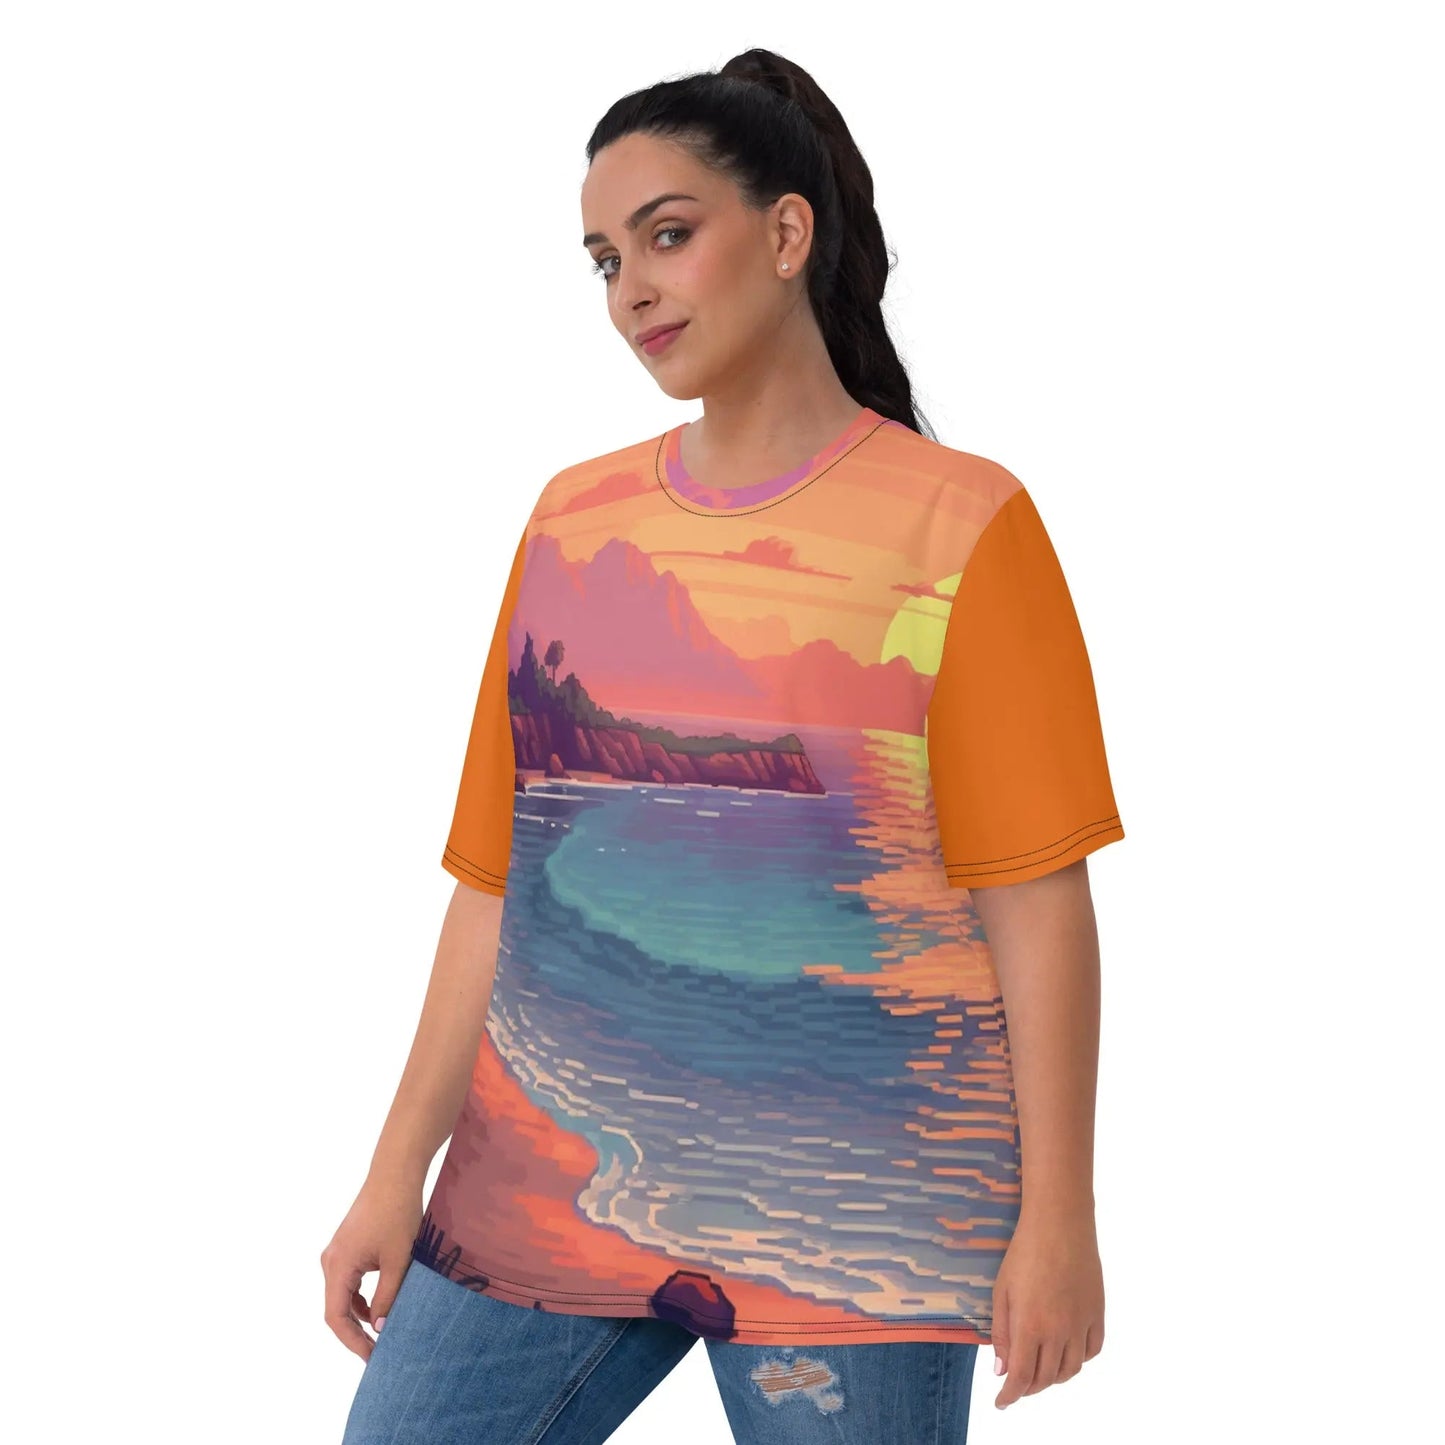 3 Pixel Art Sunset Beach Women’s T-shirt by Neduz Designs